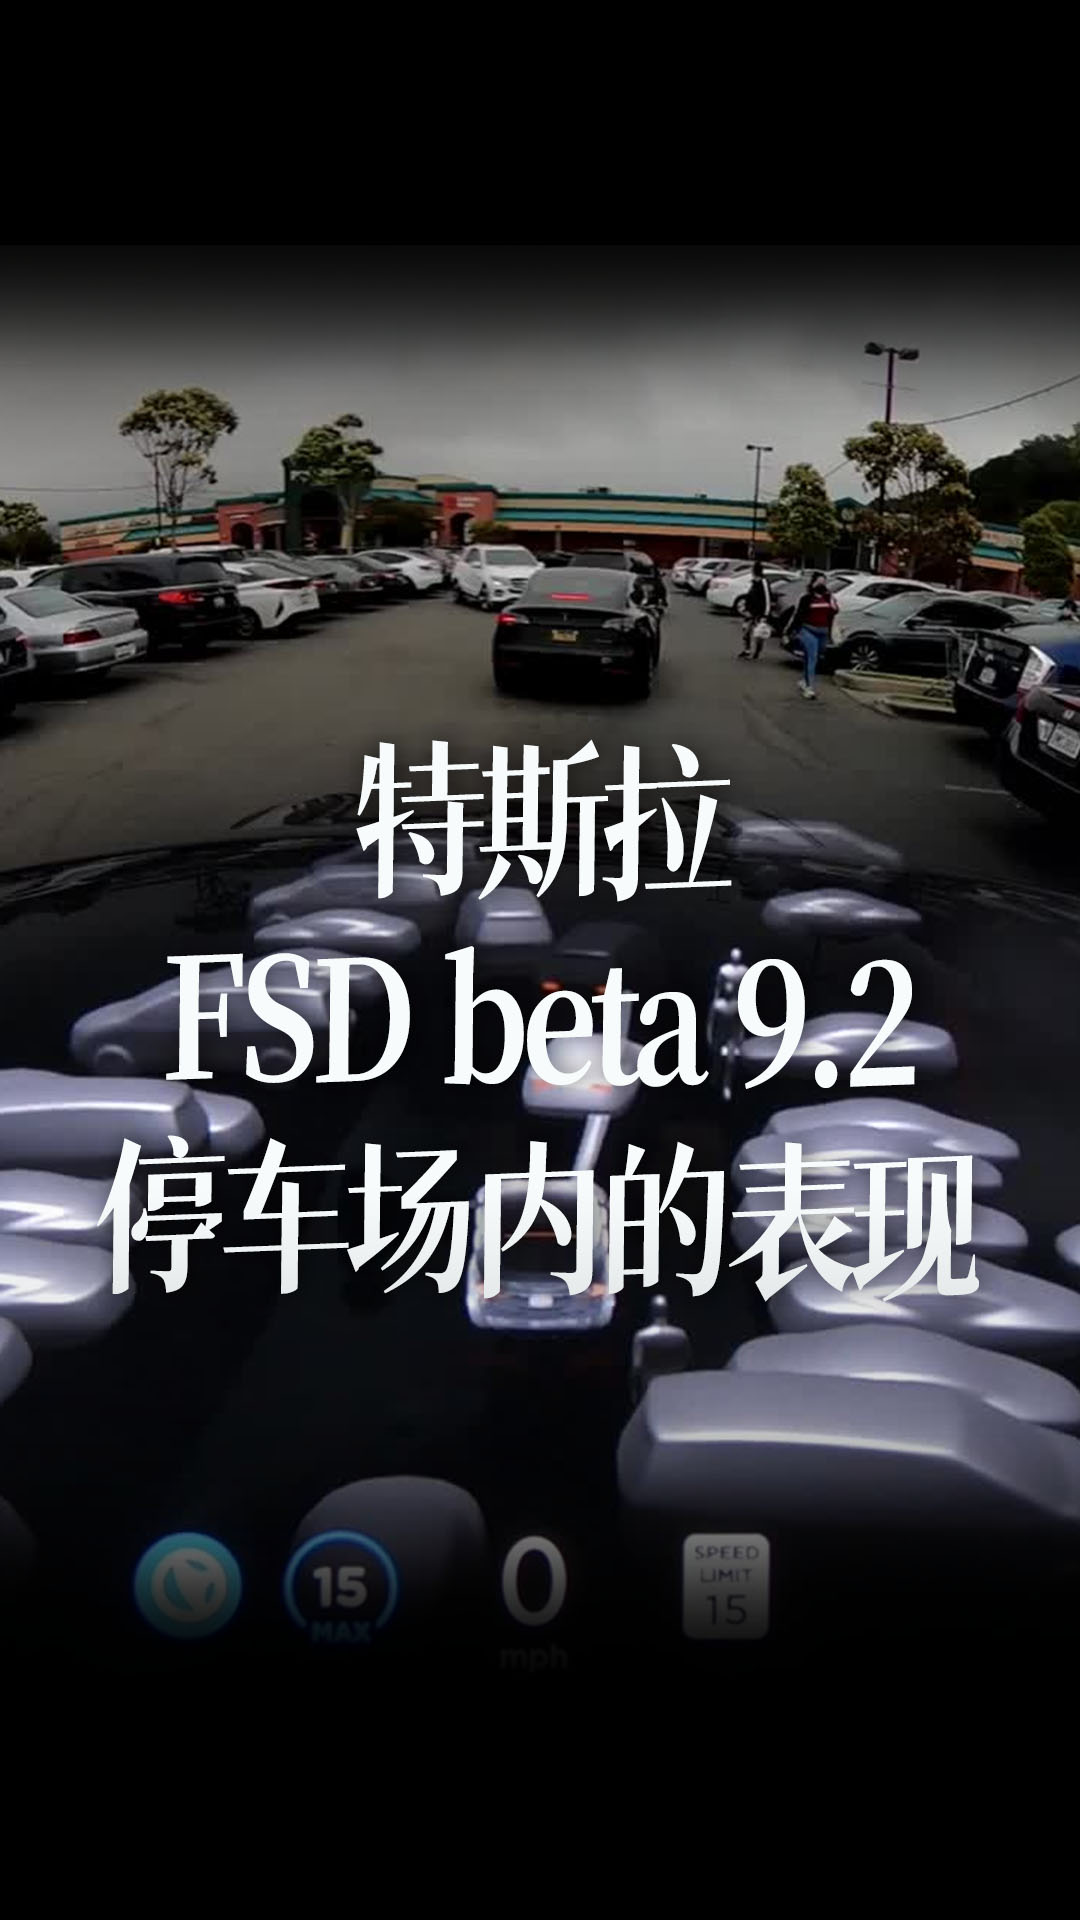 特斯拉FSD beta 9.2在一个繁忙停车场内的表现